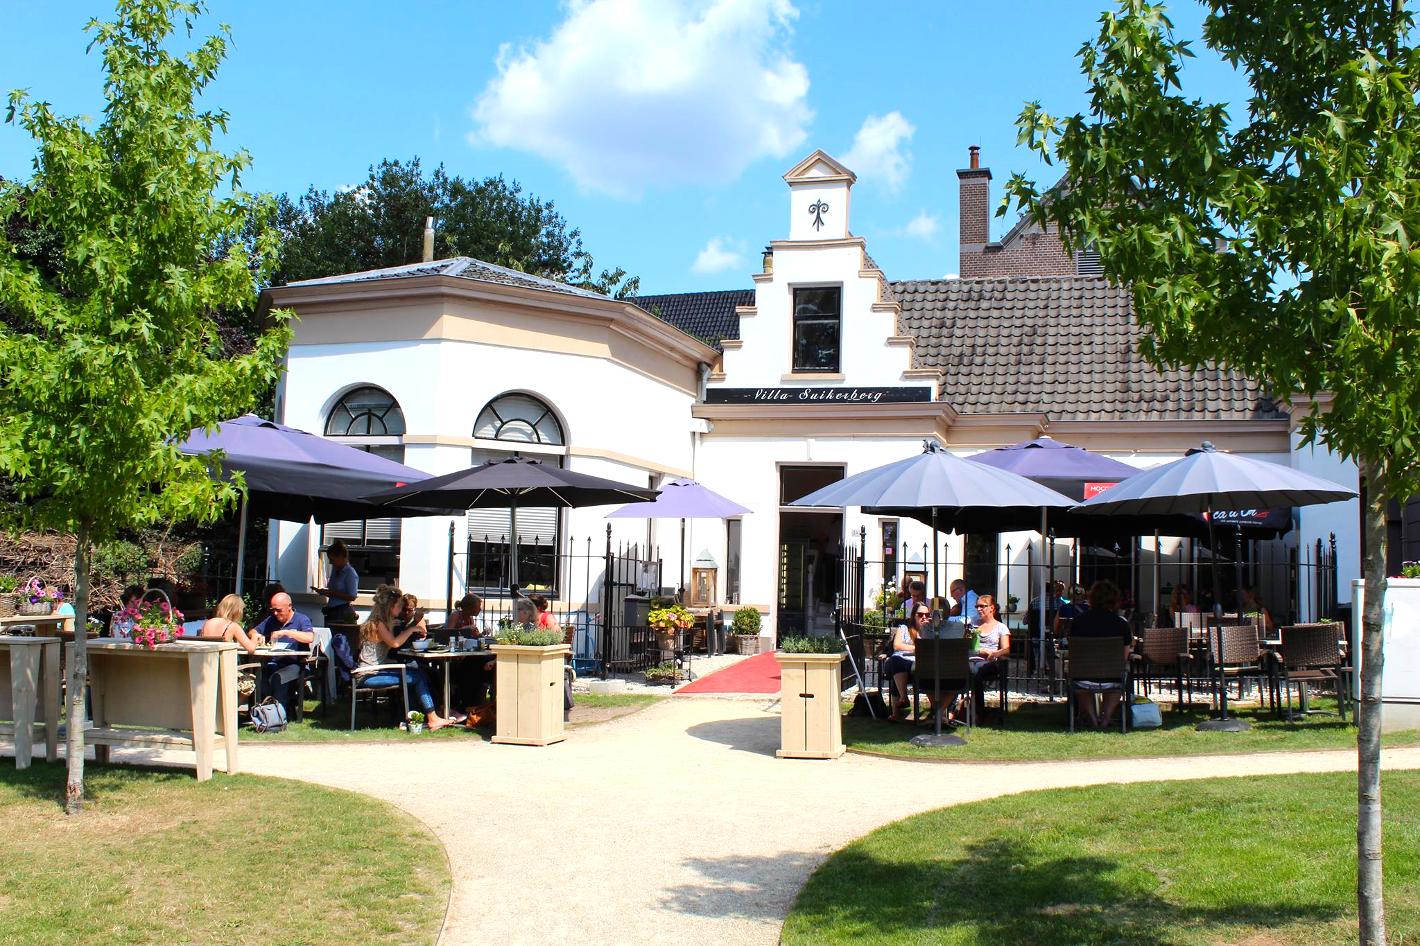 Photo Villa Suikerberg en Zwolle, Manger & boire, Savourer un déjeuner, Boire un verre - #1